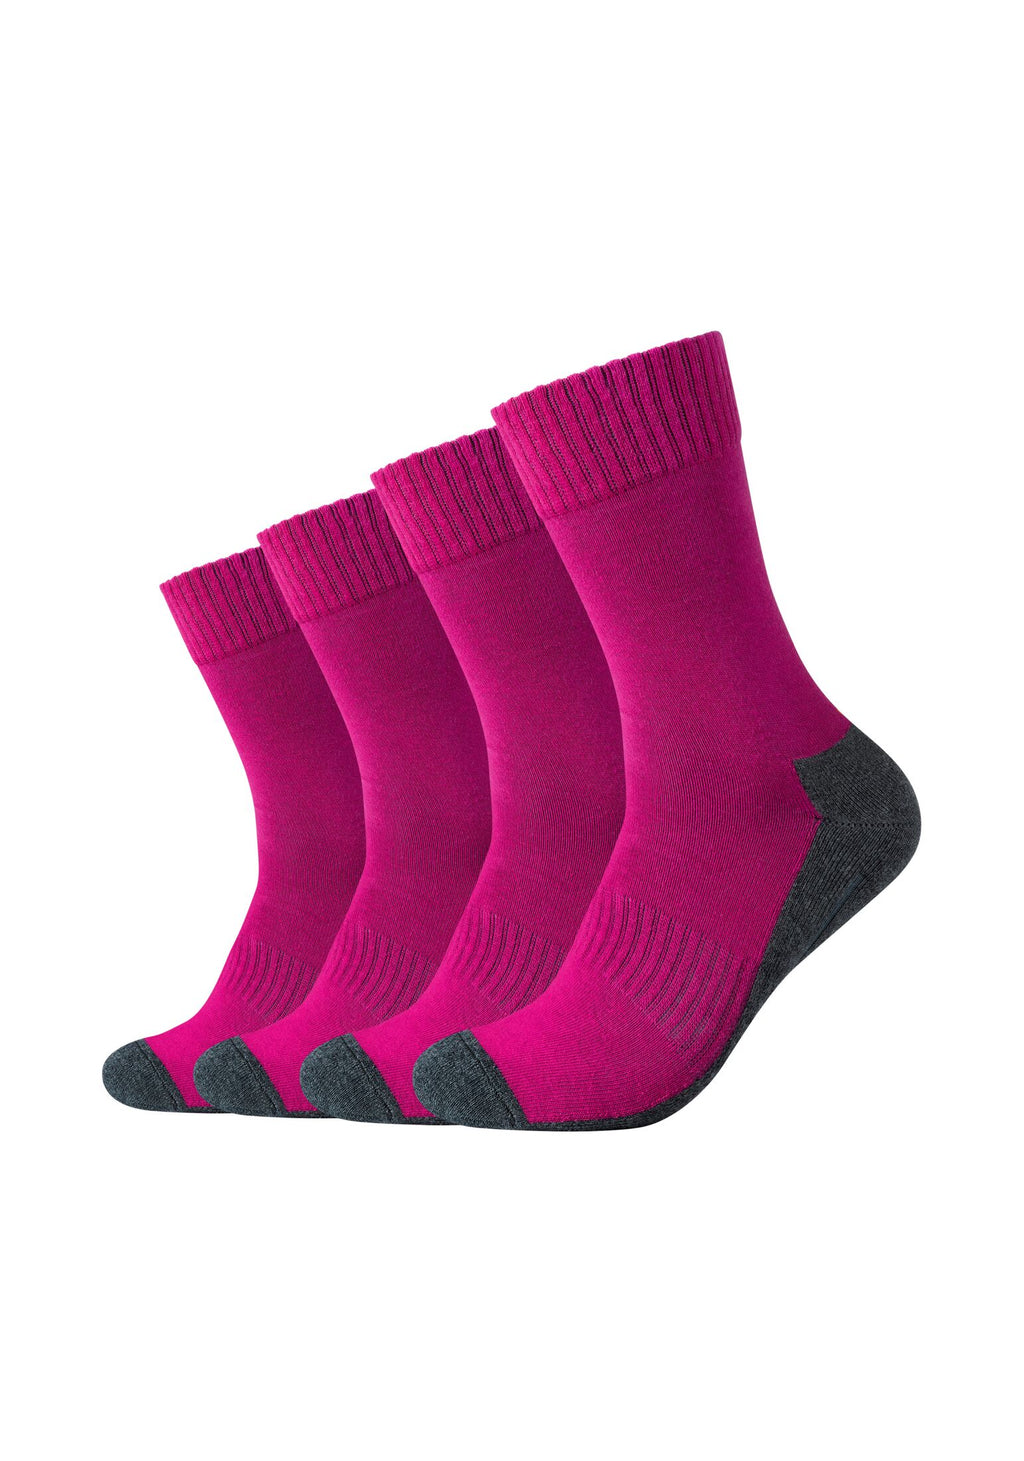 ONSKINERY – 4er Pro-Tex-Funktion Pack Sport-Socken